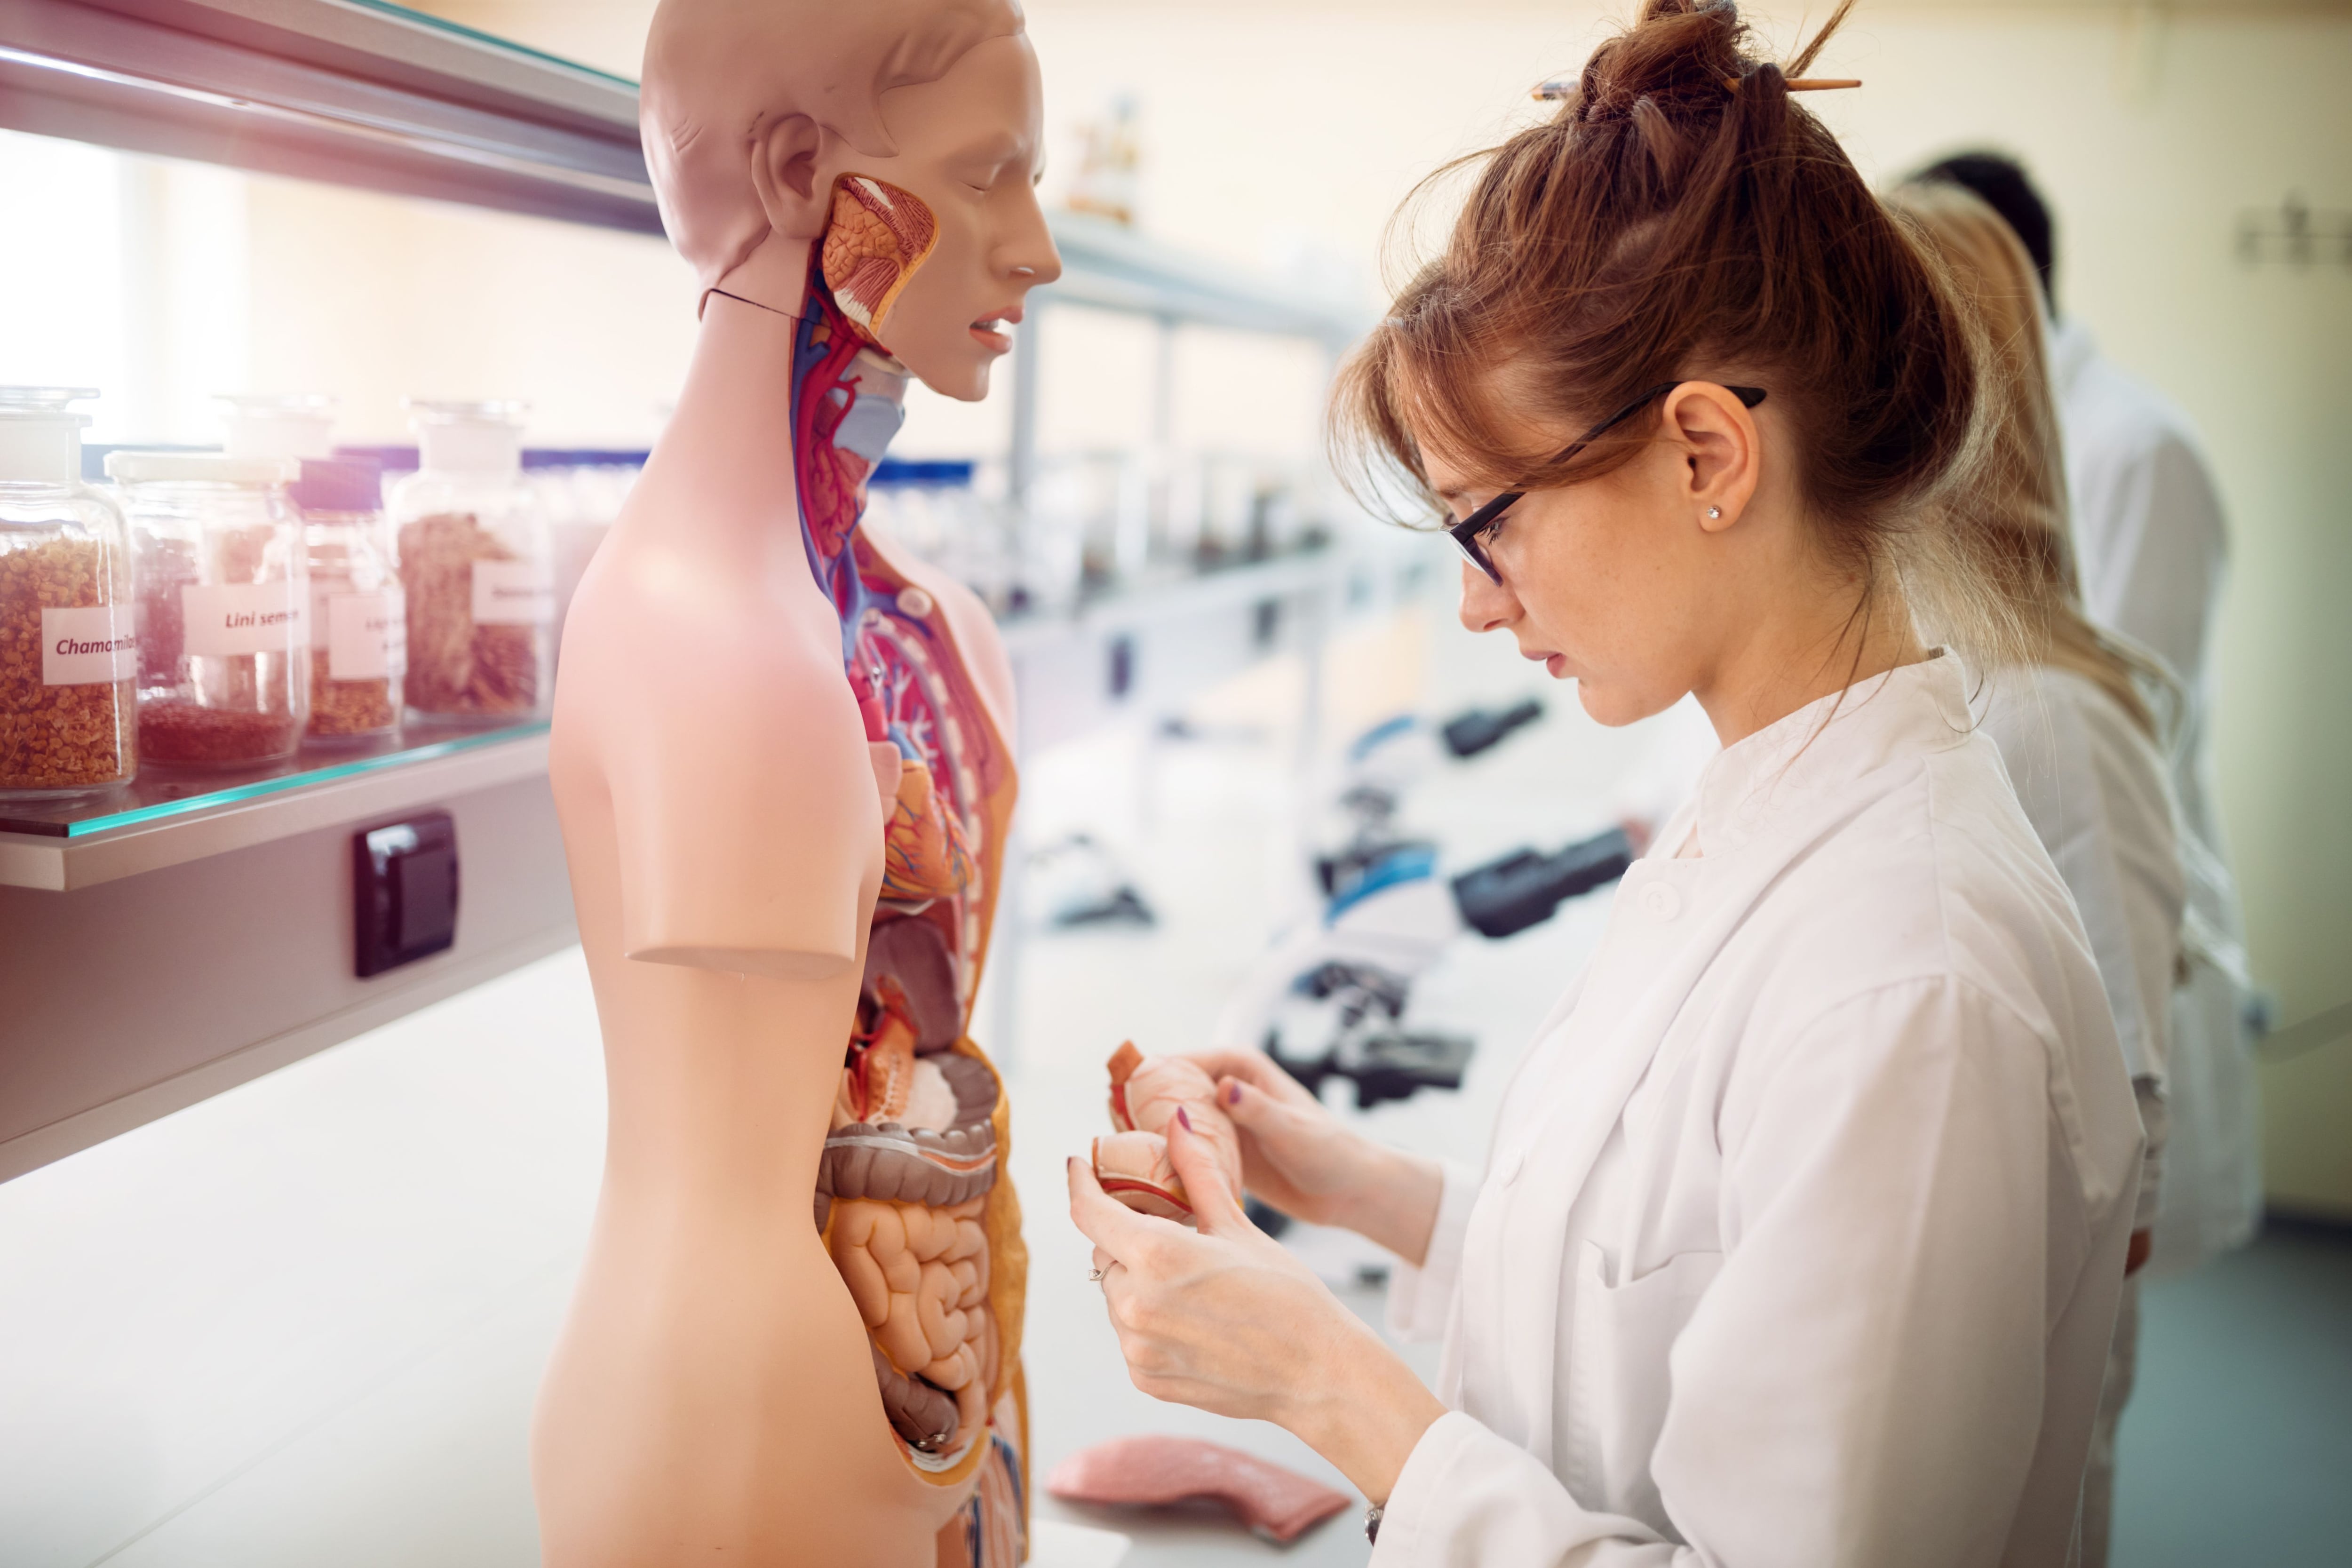 Las instituciones privadas pueden colaborar en la promoción de una cultura de educación médica. Foto: Shutterstock